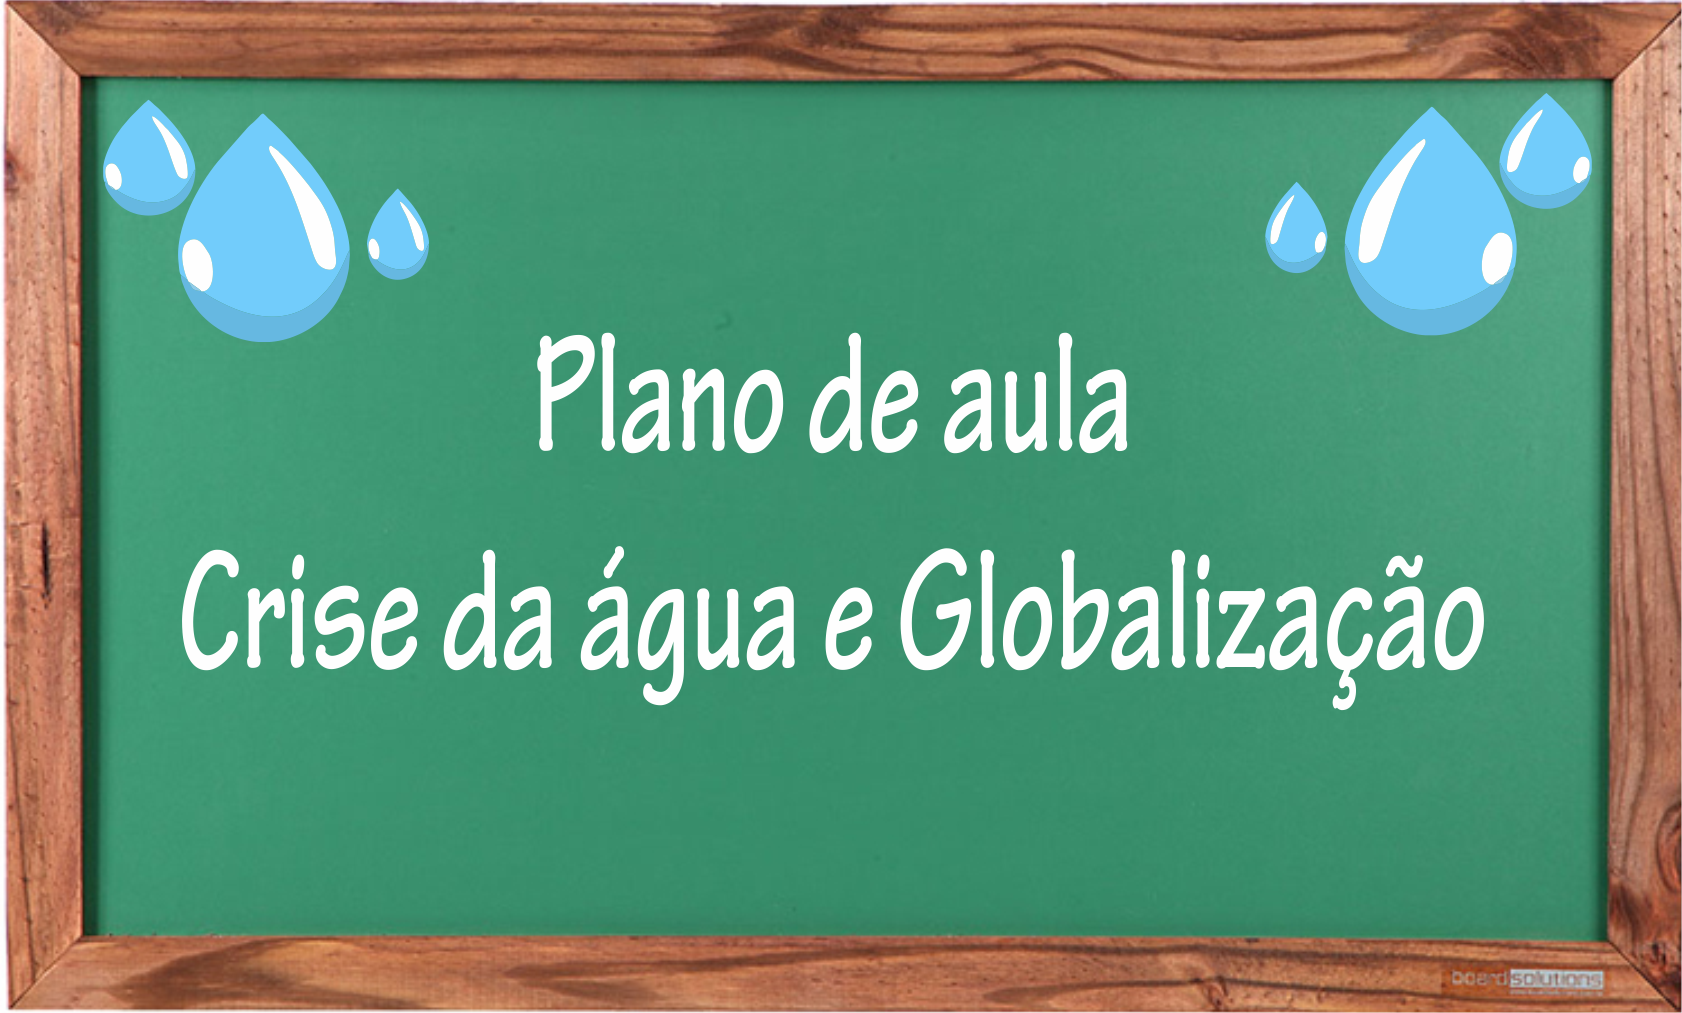 Plano de aula crise da agua e globalização